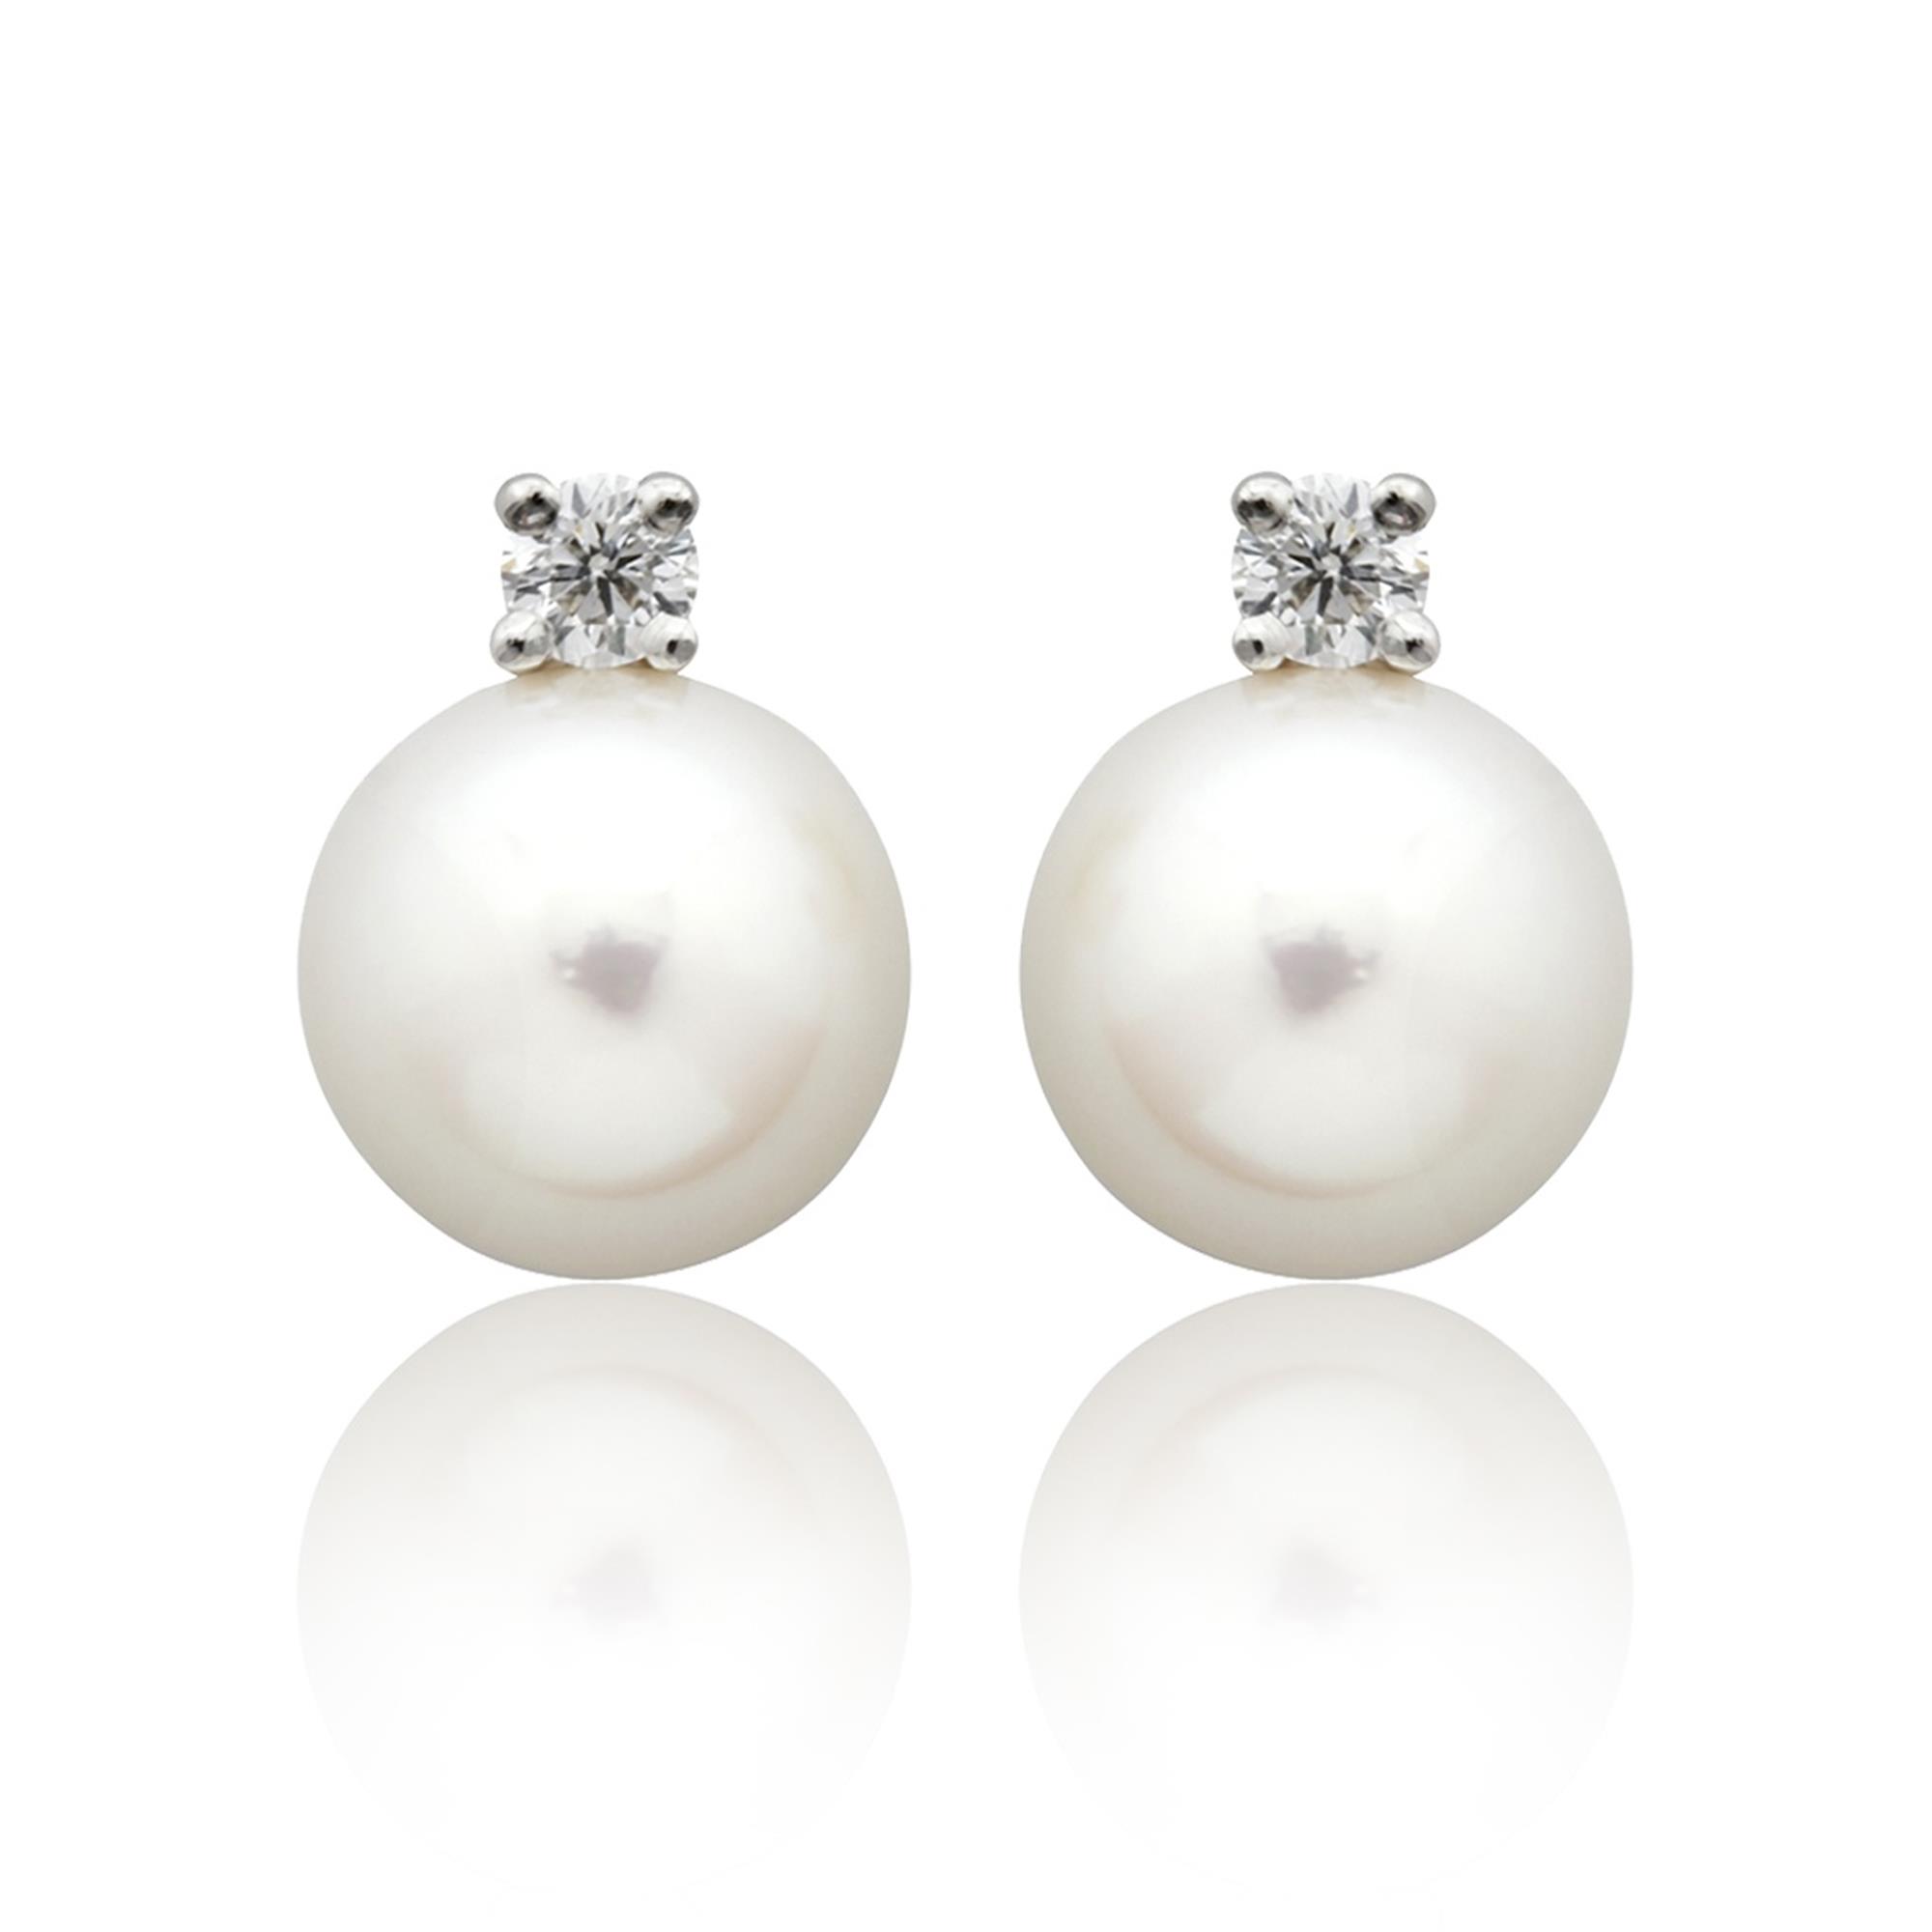 Shop Latest White Pearl Earrings Online  Pearl Jewelry Kalyan